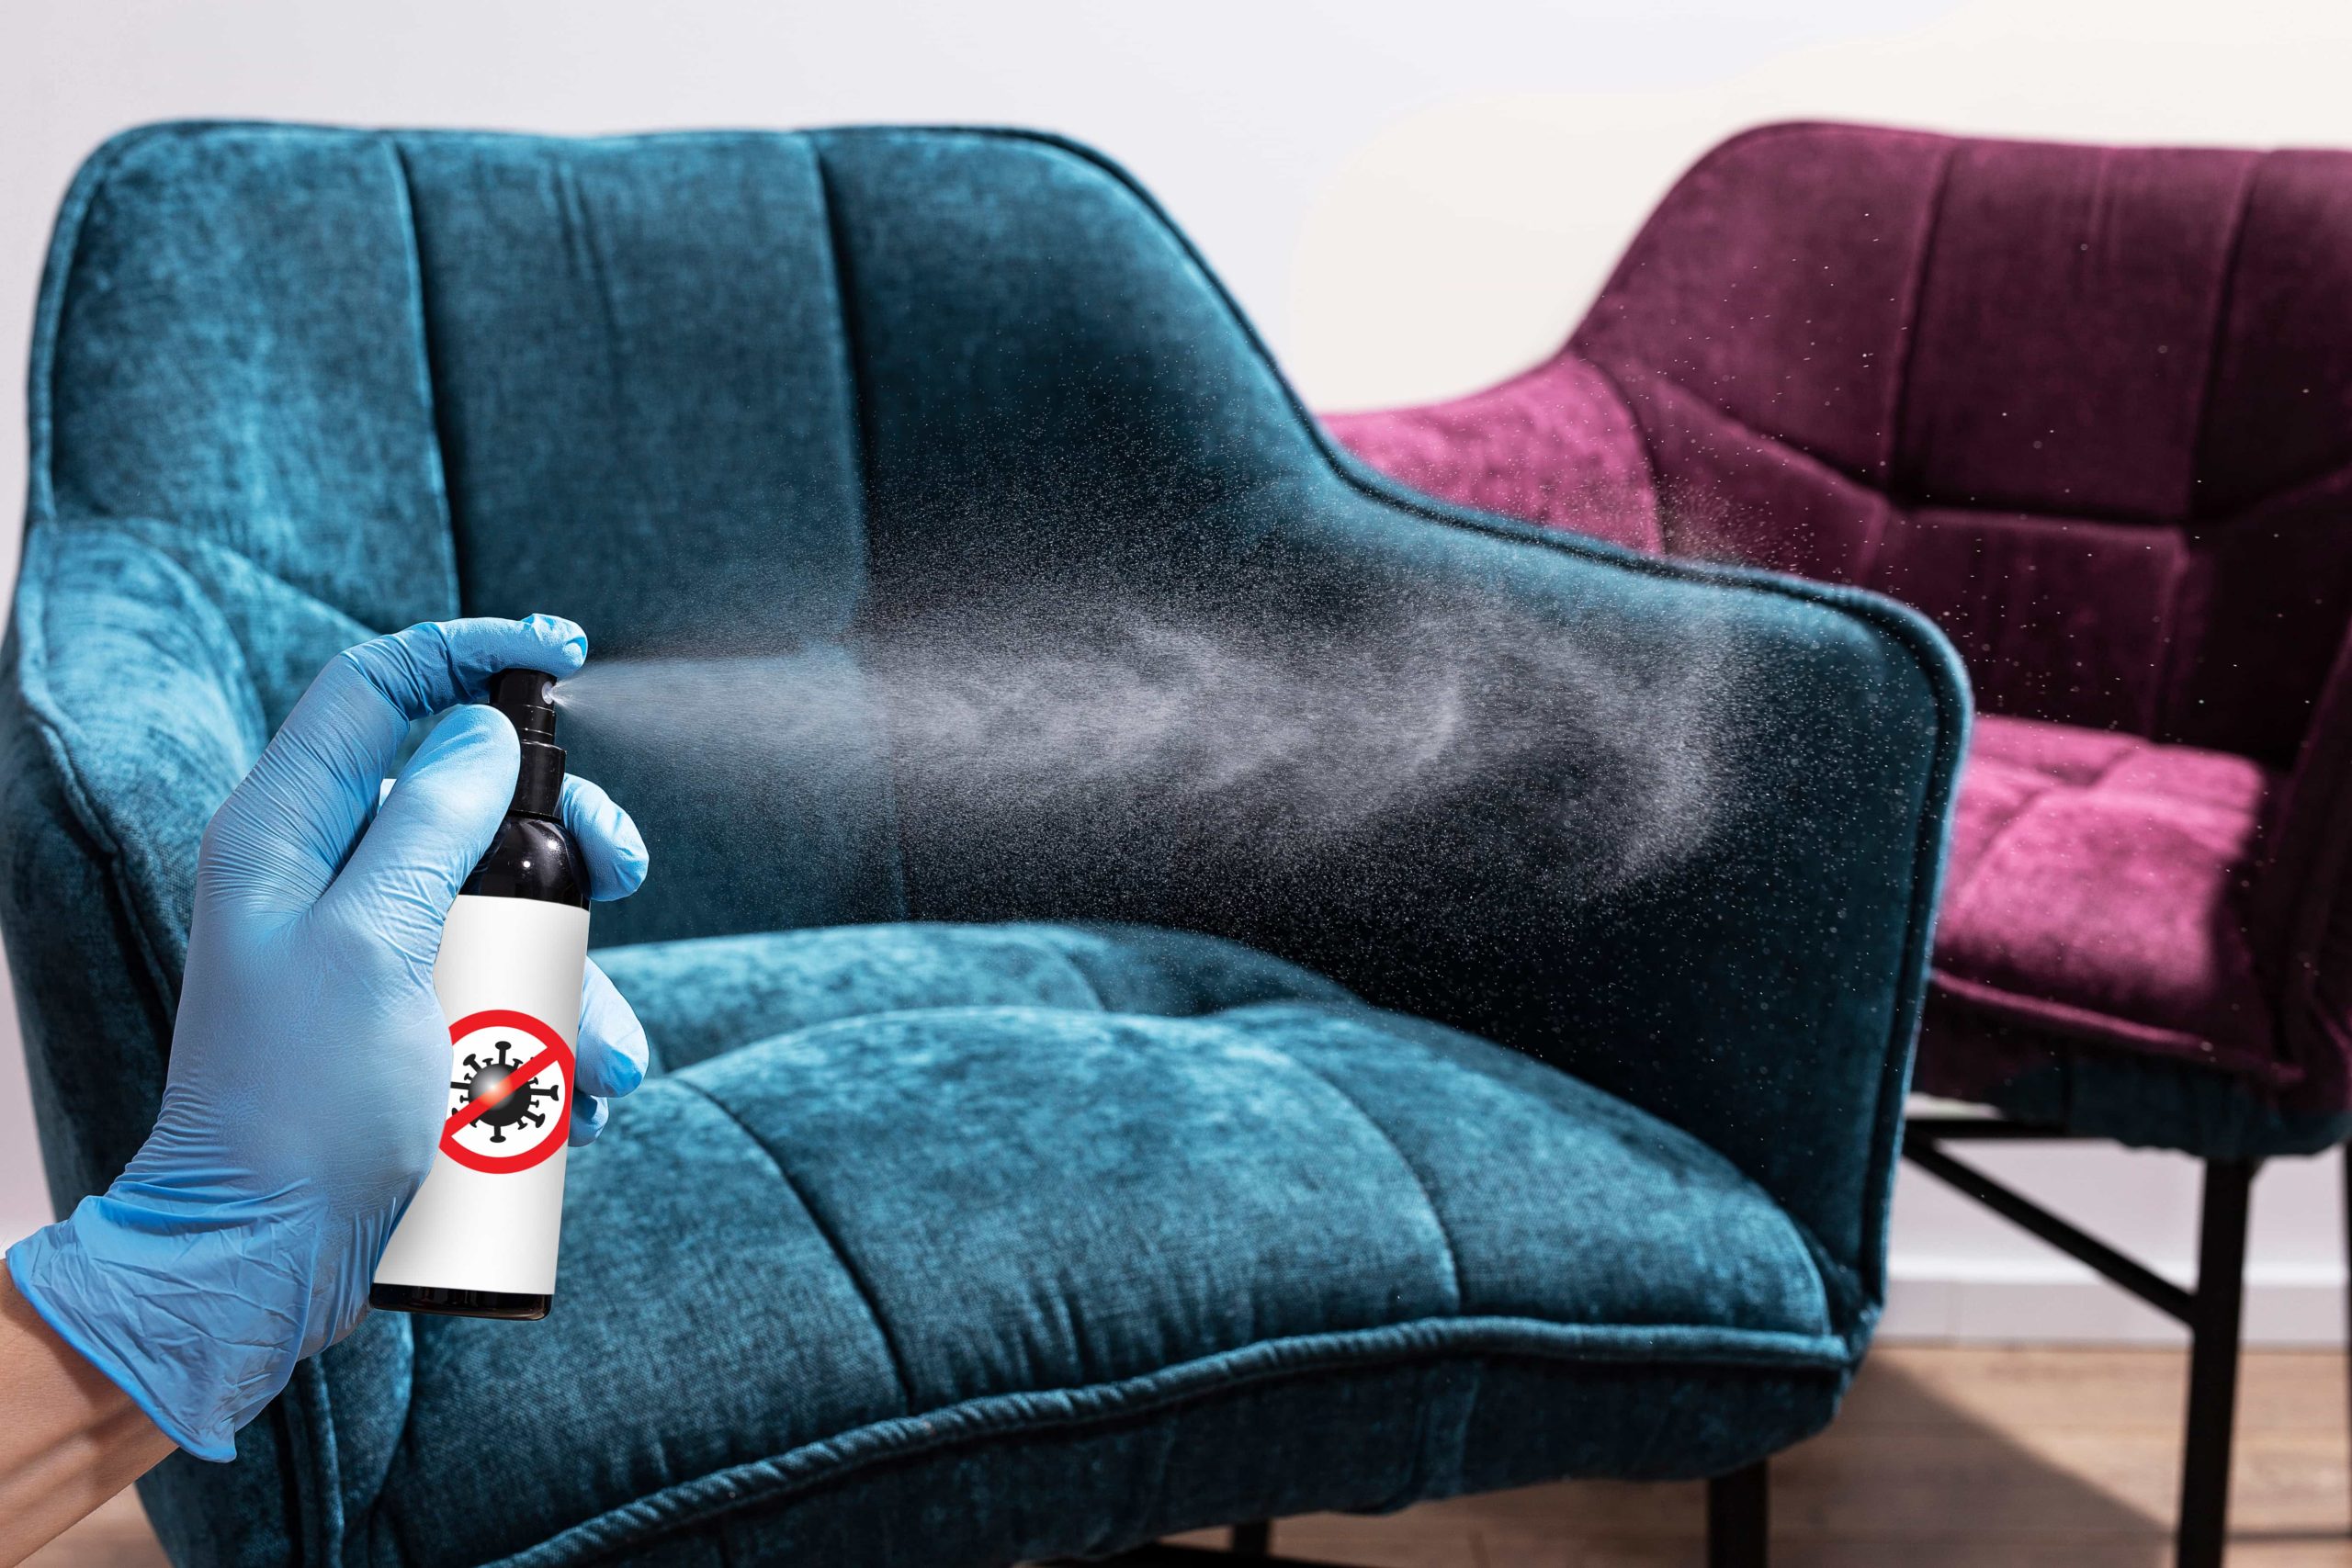 How do you disinfect a sofa